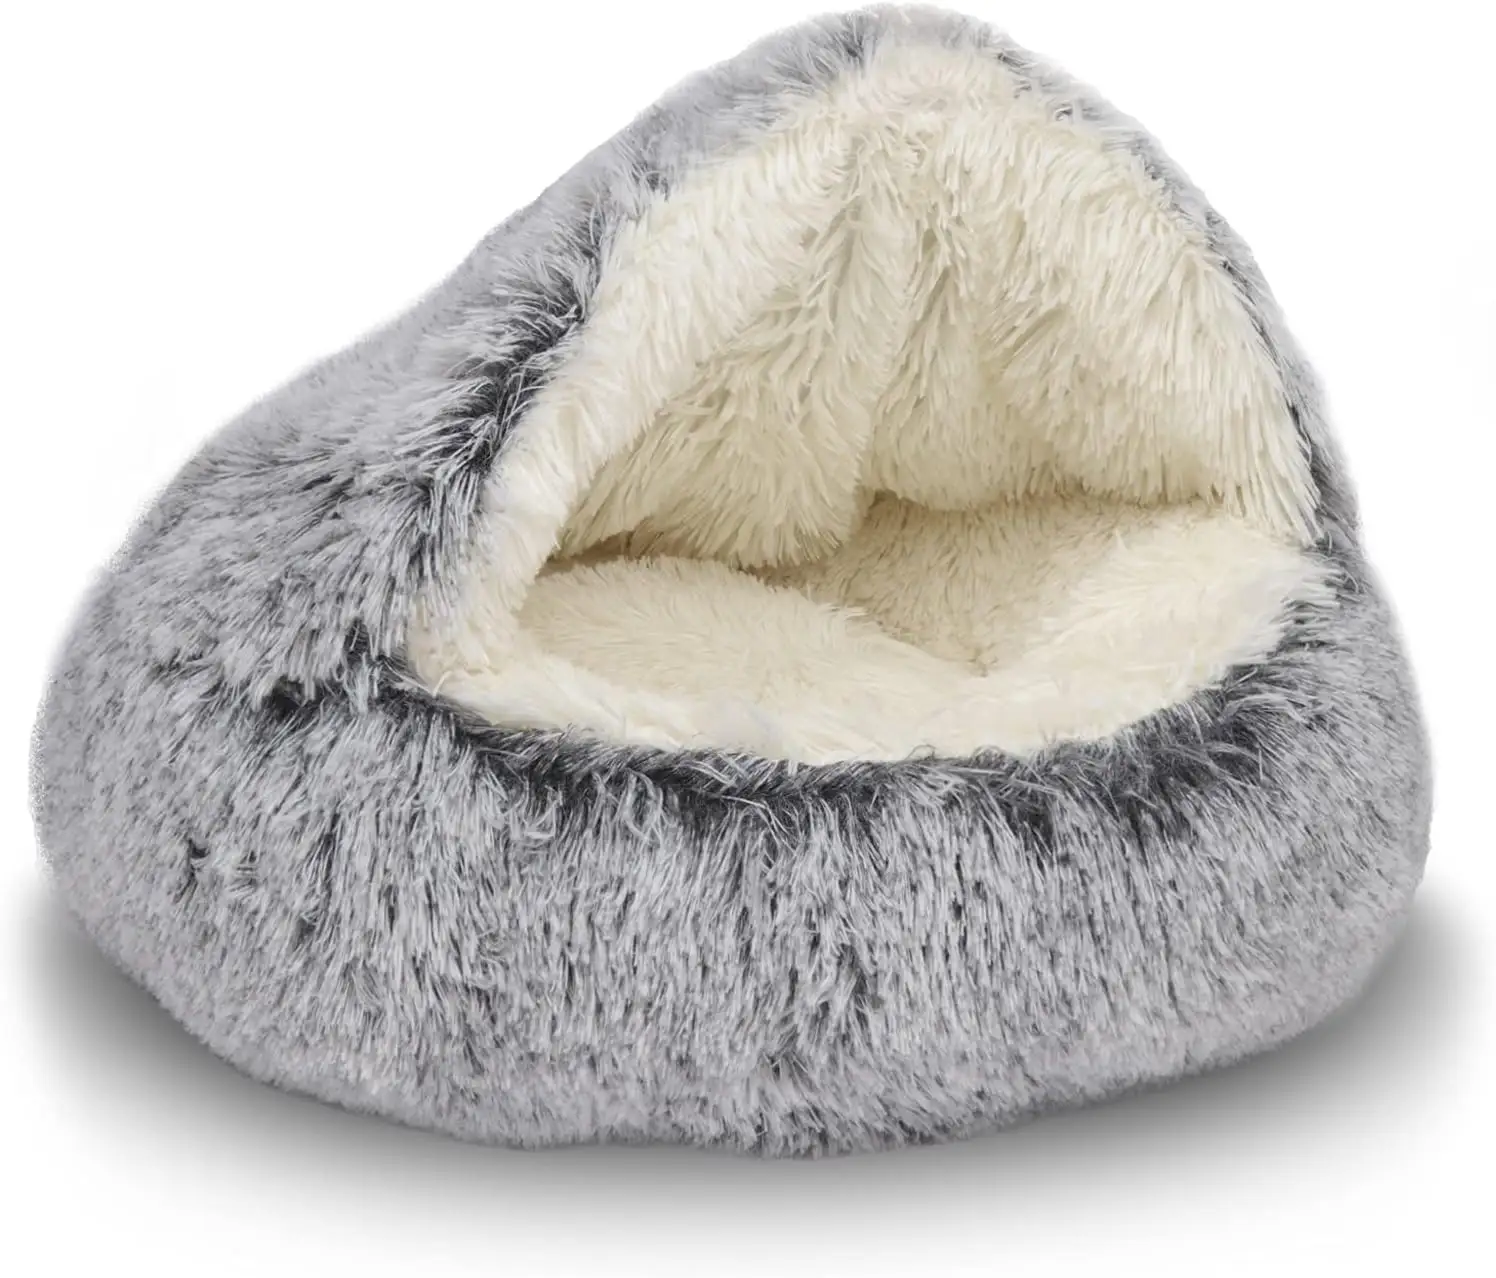 Lujo lavable antideslizante esponjoso acogedor felpa invierno cálido mascota gato perro cama para dormir con capucha cubierta donut cueva miel cama